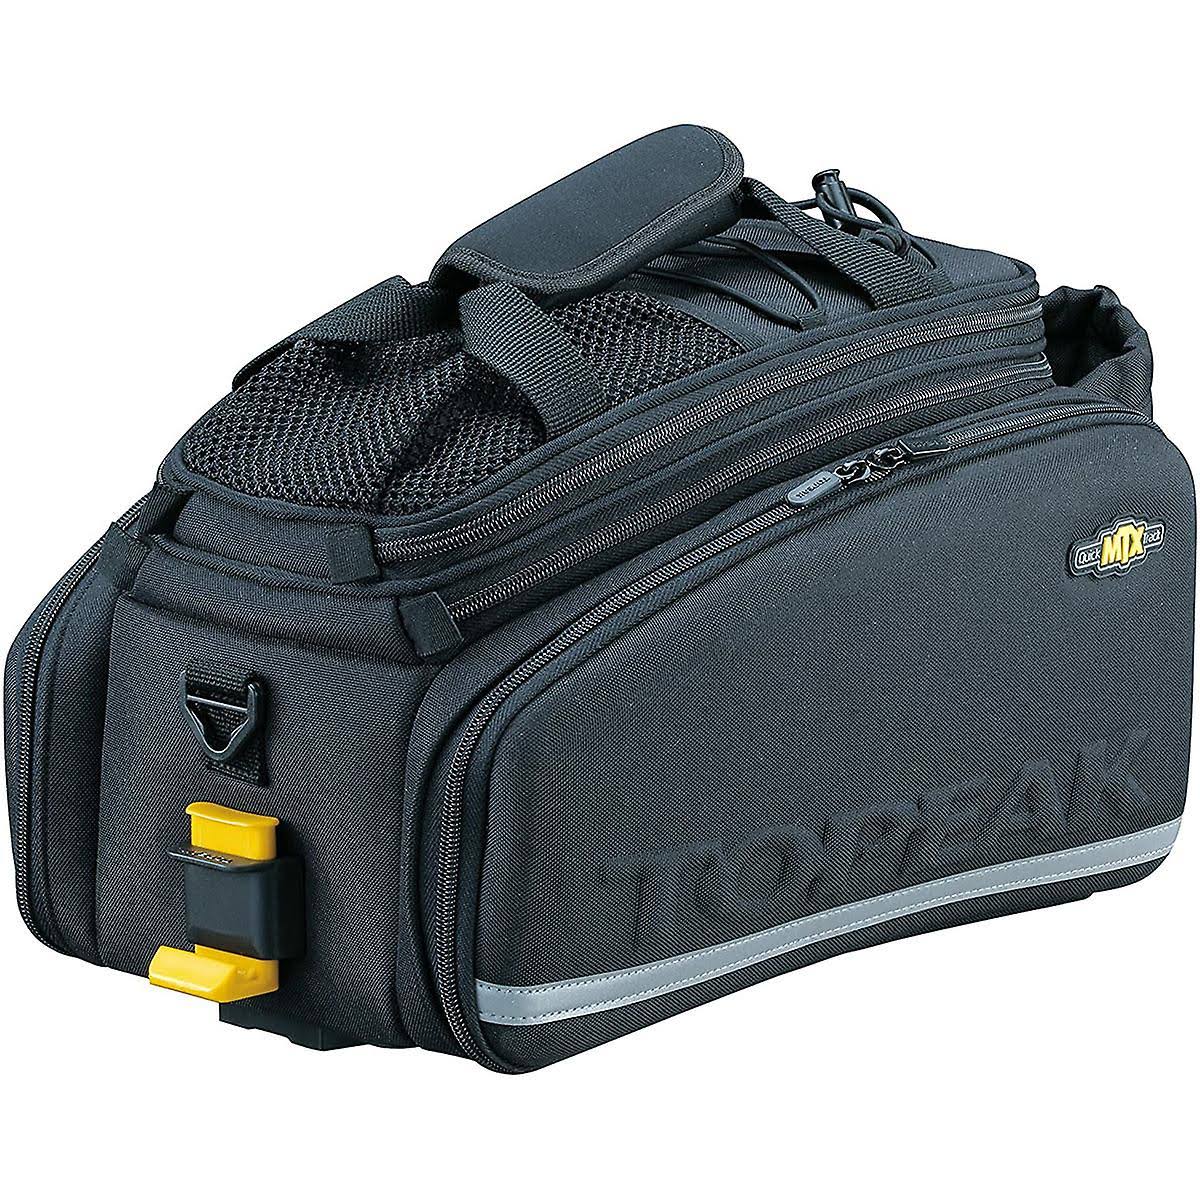 Topeak MTX Trunkbag DXP Rack Bag with Expandable Panniers - 22.6 Liter, Black